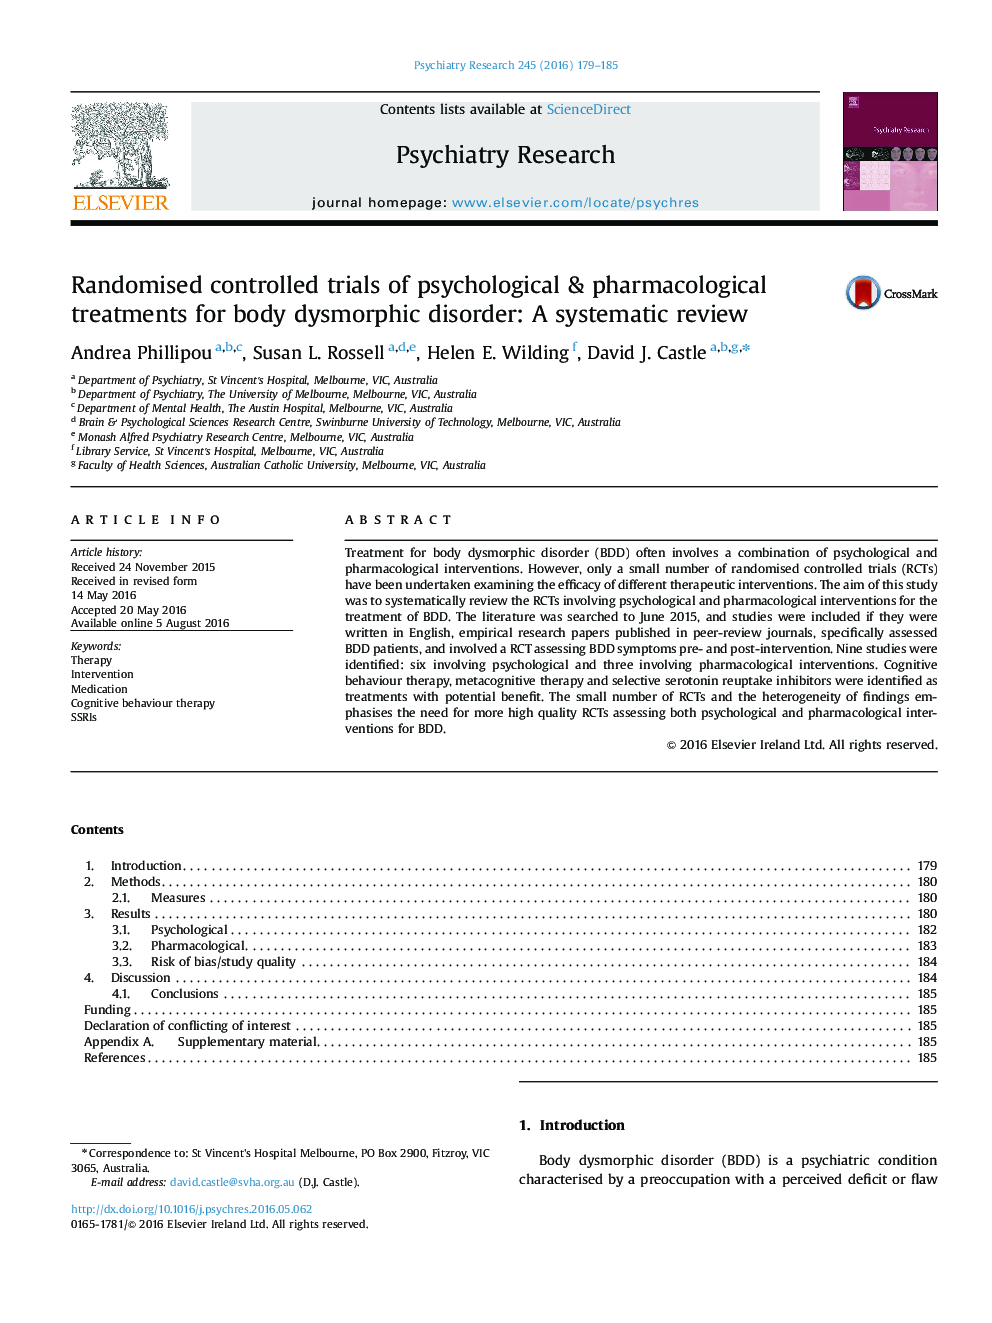 آزمایشهای تصادفی کنترل شده از درمان های روانشناختی و دارویی برای اختلالات دیسمورفیک بدن: بررسی سیستماتیک 